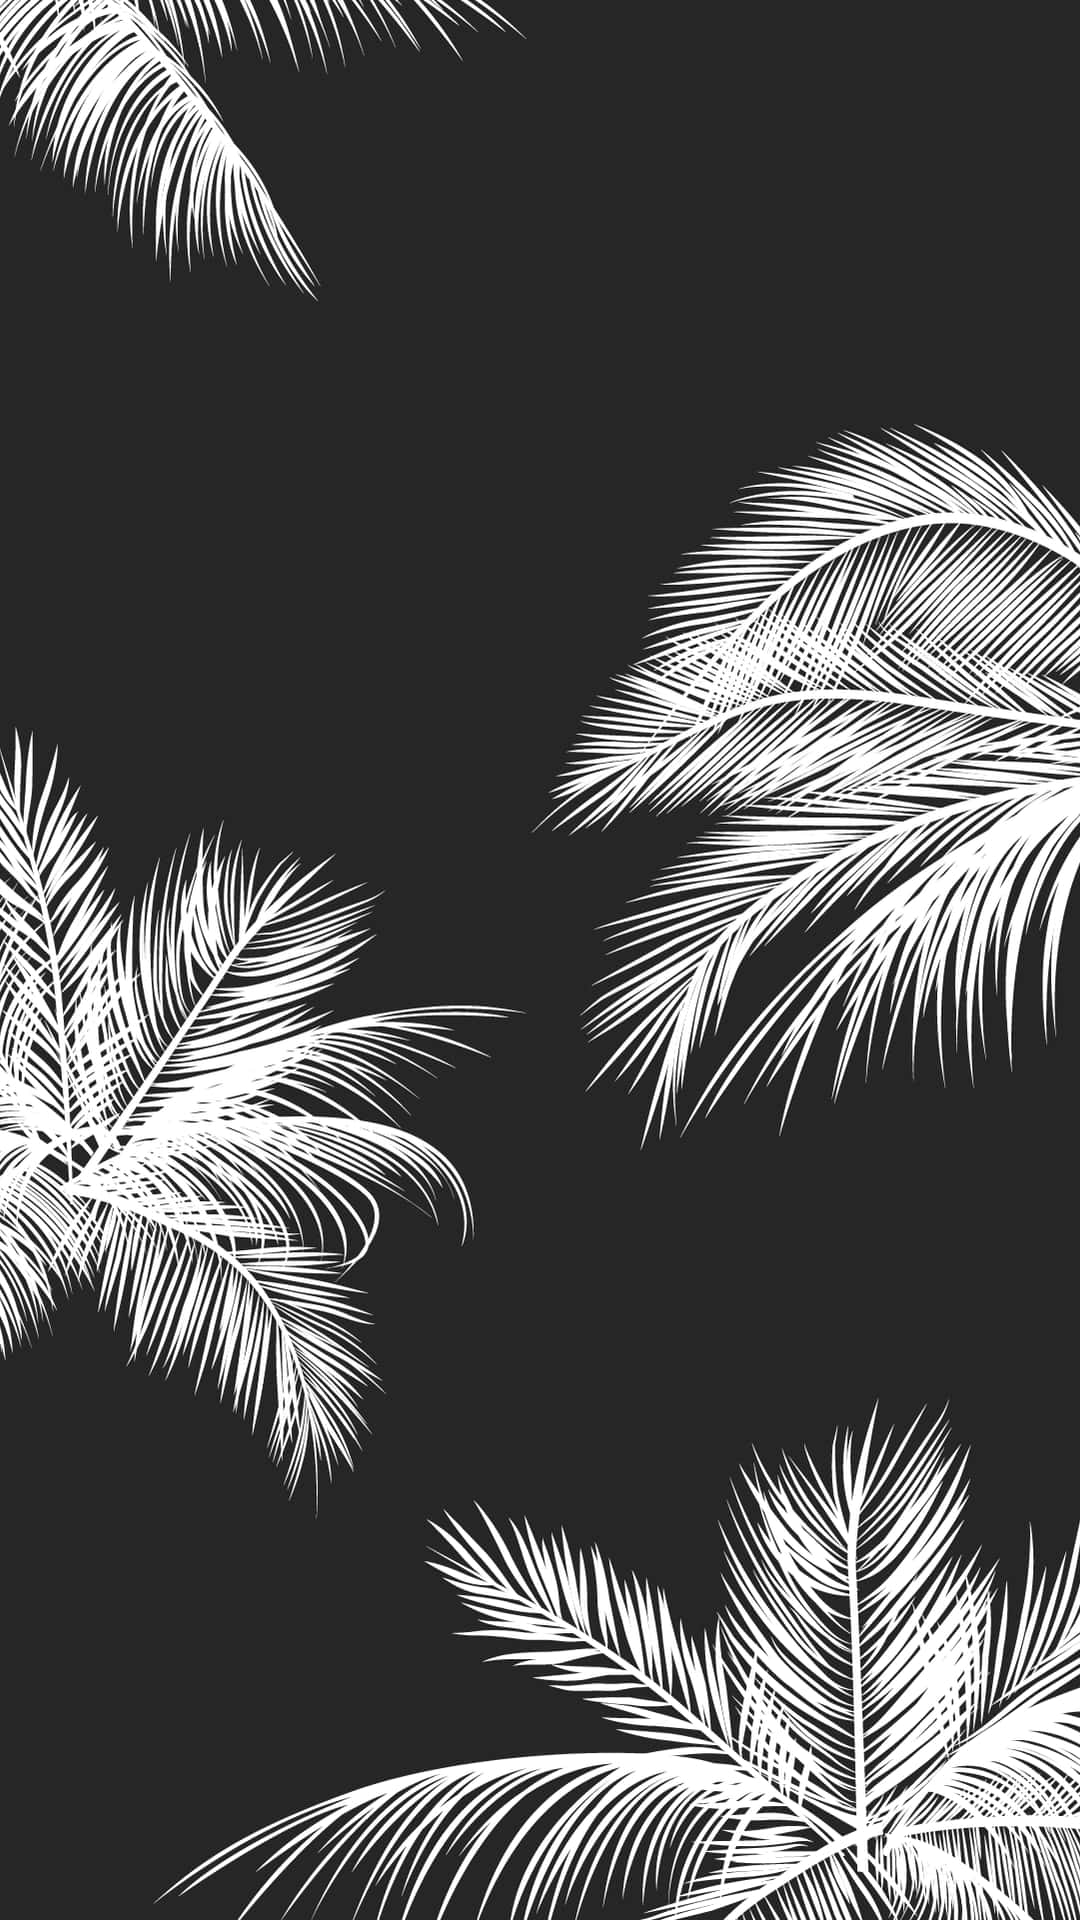 Bakgrundermed Palmträd I En Svartvit Estetisk Design För Mobiltelefoner. Wallpaper